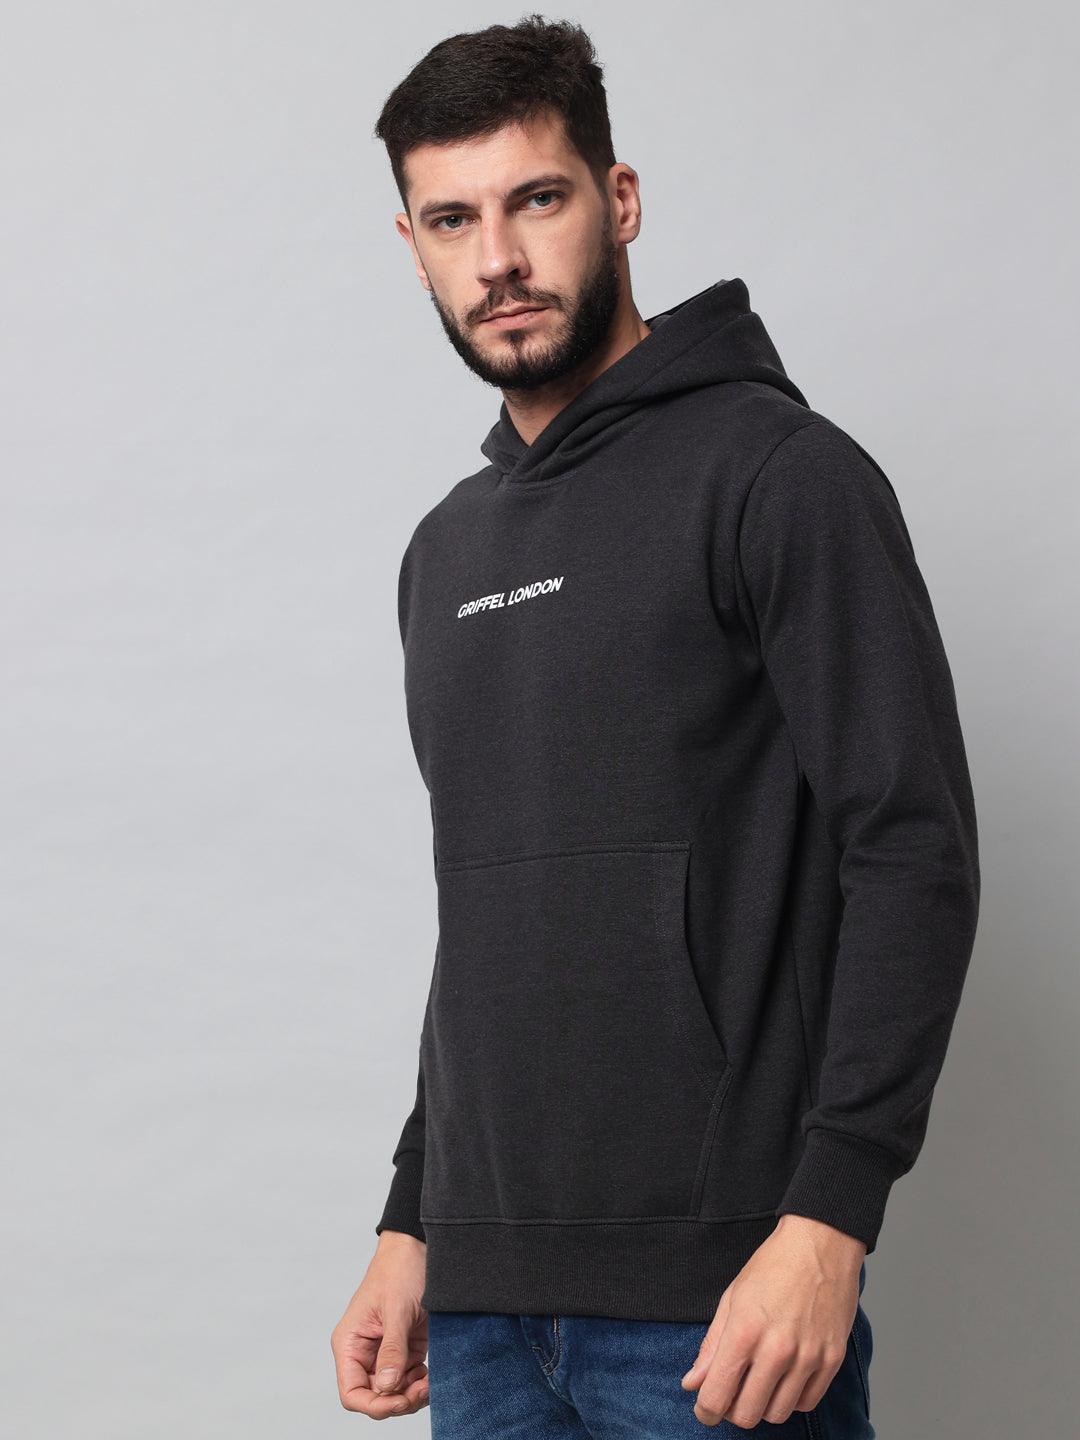 Griffel Men's Anthra Cotton Front Logo Fleece Hoody Sweatshirt with Full Sleeve - griffel